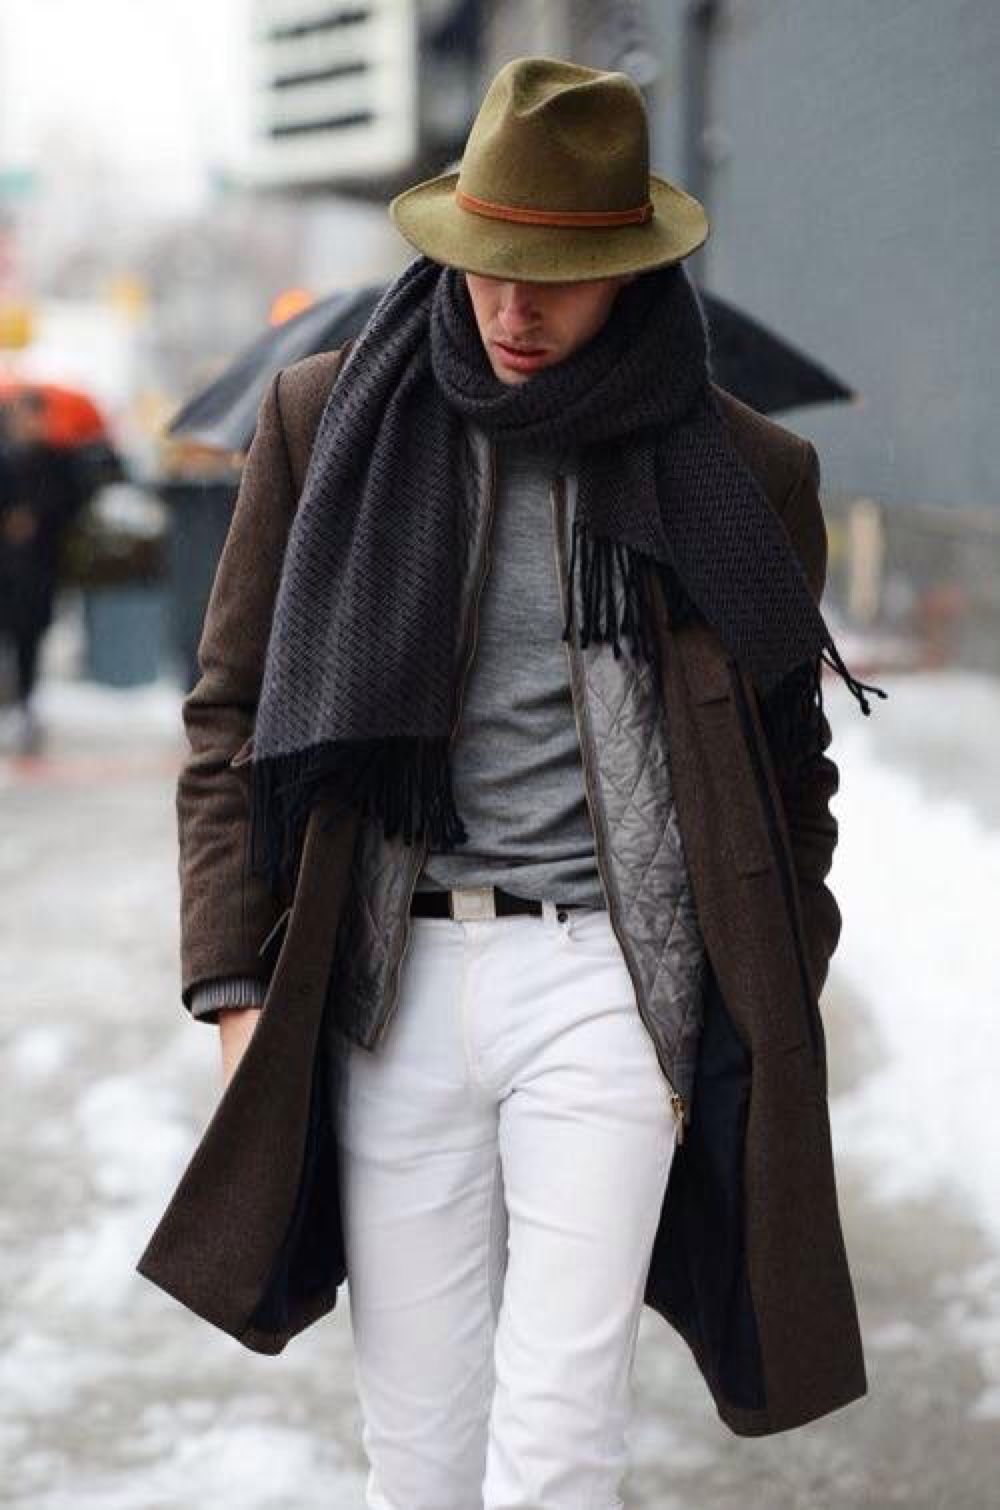 Без шляпы и пальто. Шляпа Street stail Mens. Пальто и шляпа мужские. Шляпа под пальто мужское. Мужской стиль со шляпой.